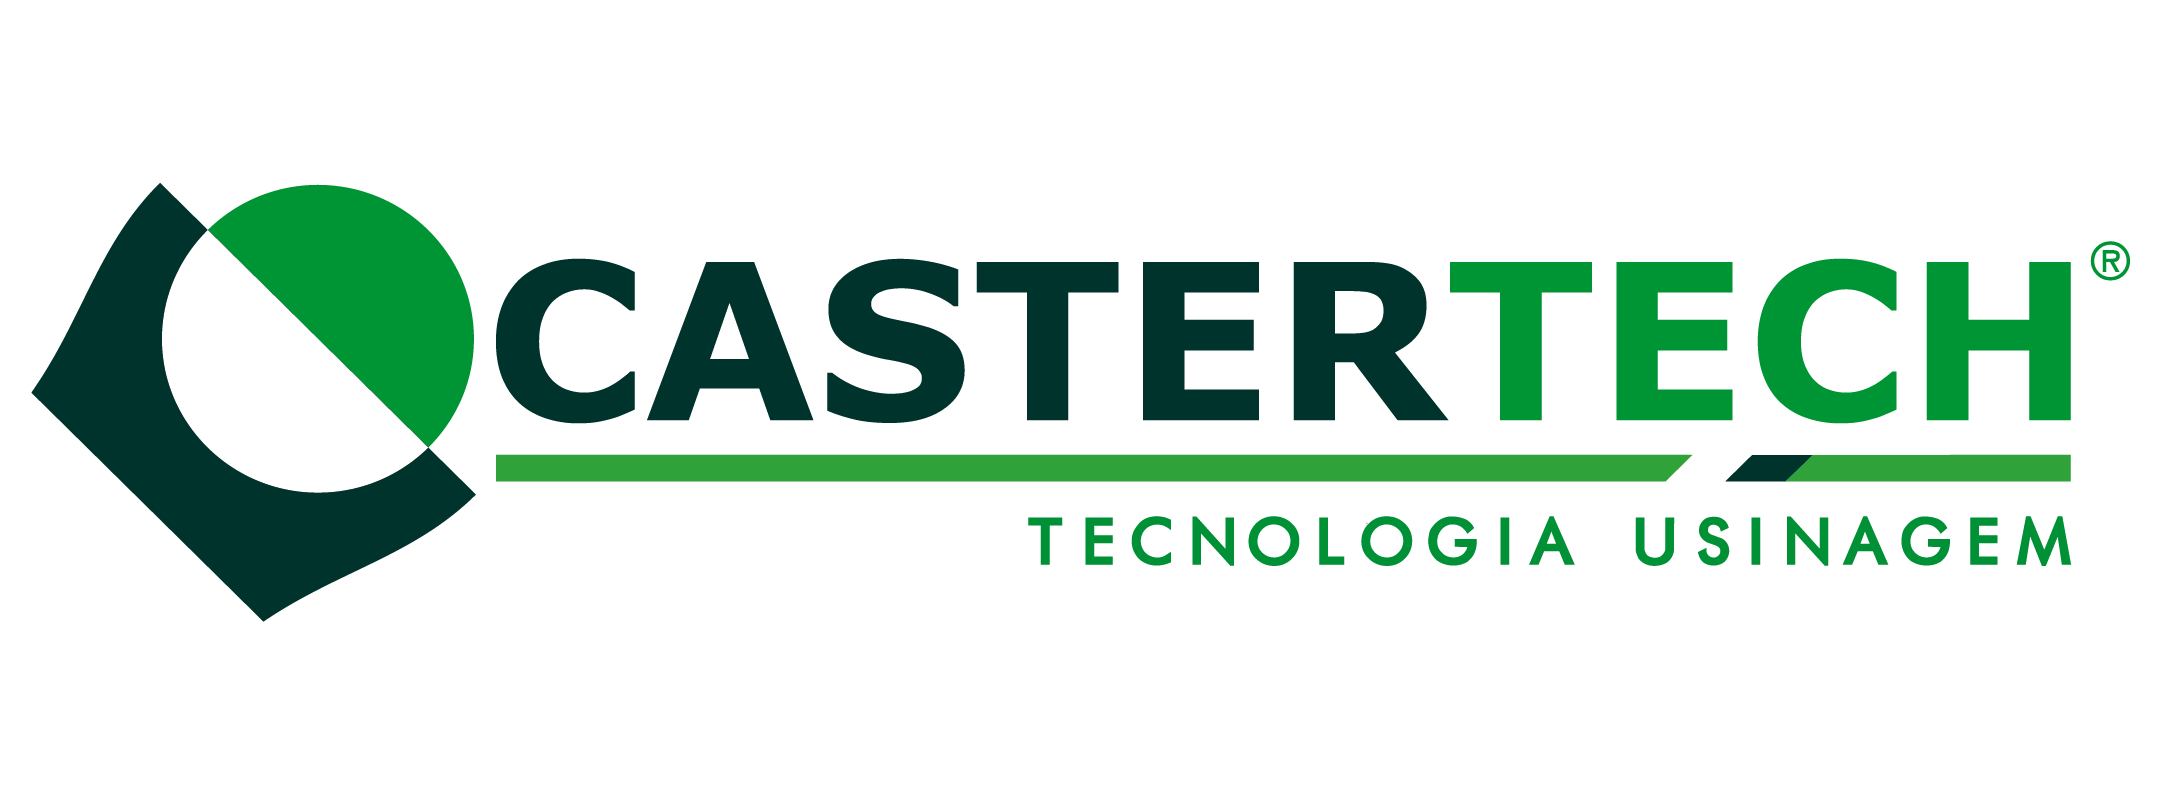 Logo Castertech Tecnologia Usinagem